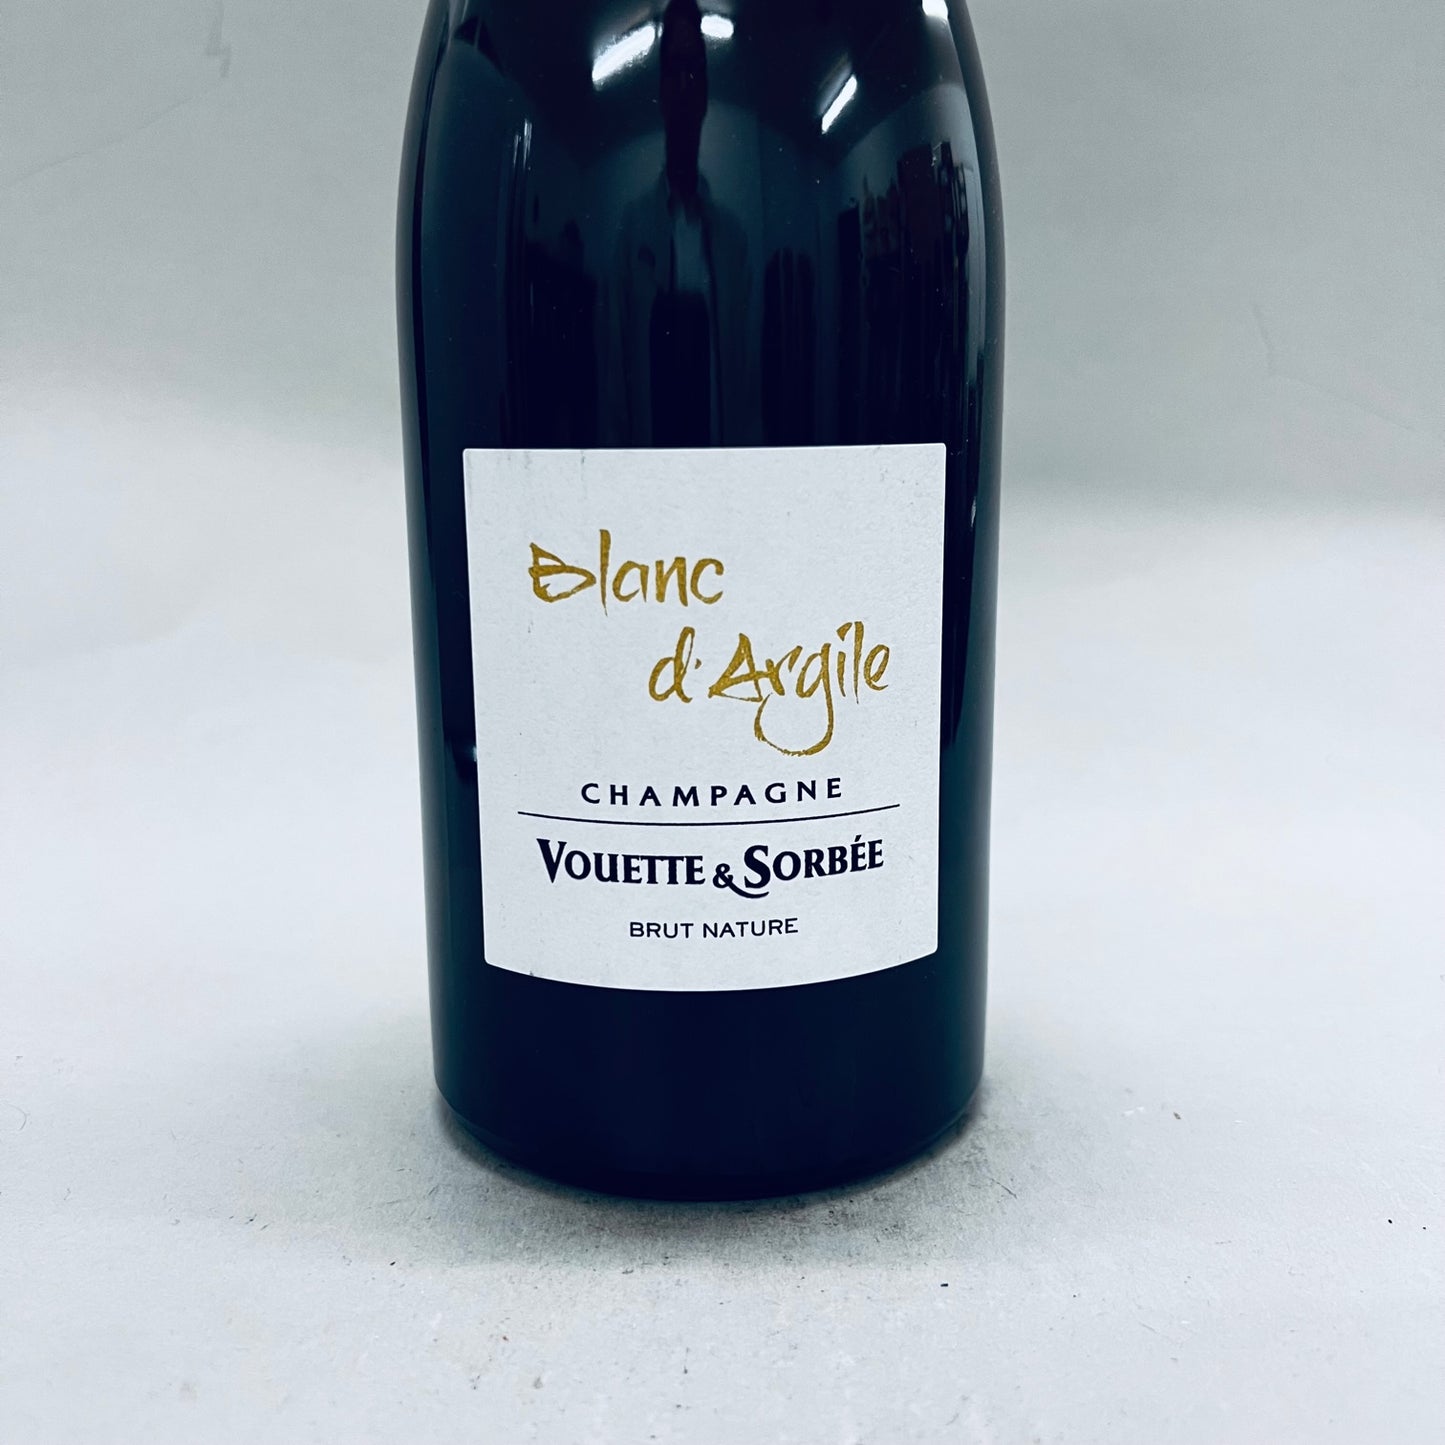 2019 Vouette & Sorbee Blanc d'Argile Brut Nature Champagne